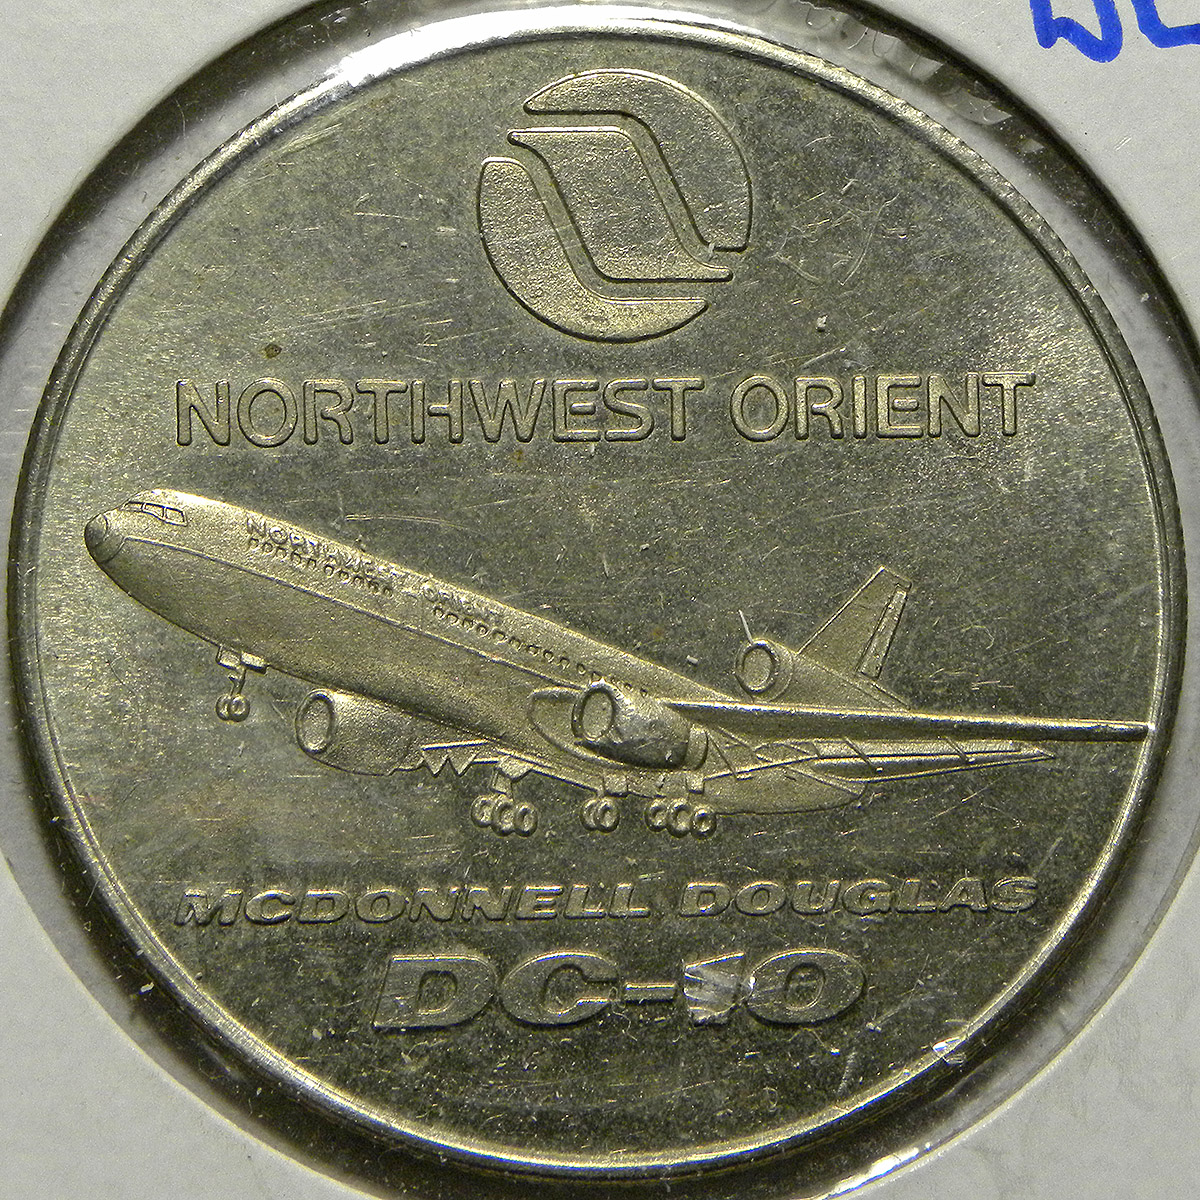 Northwest Orient McDonnell Douglas DC-10 medal (obverse)